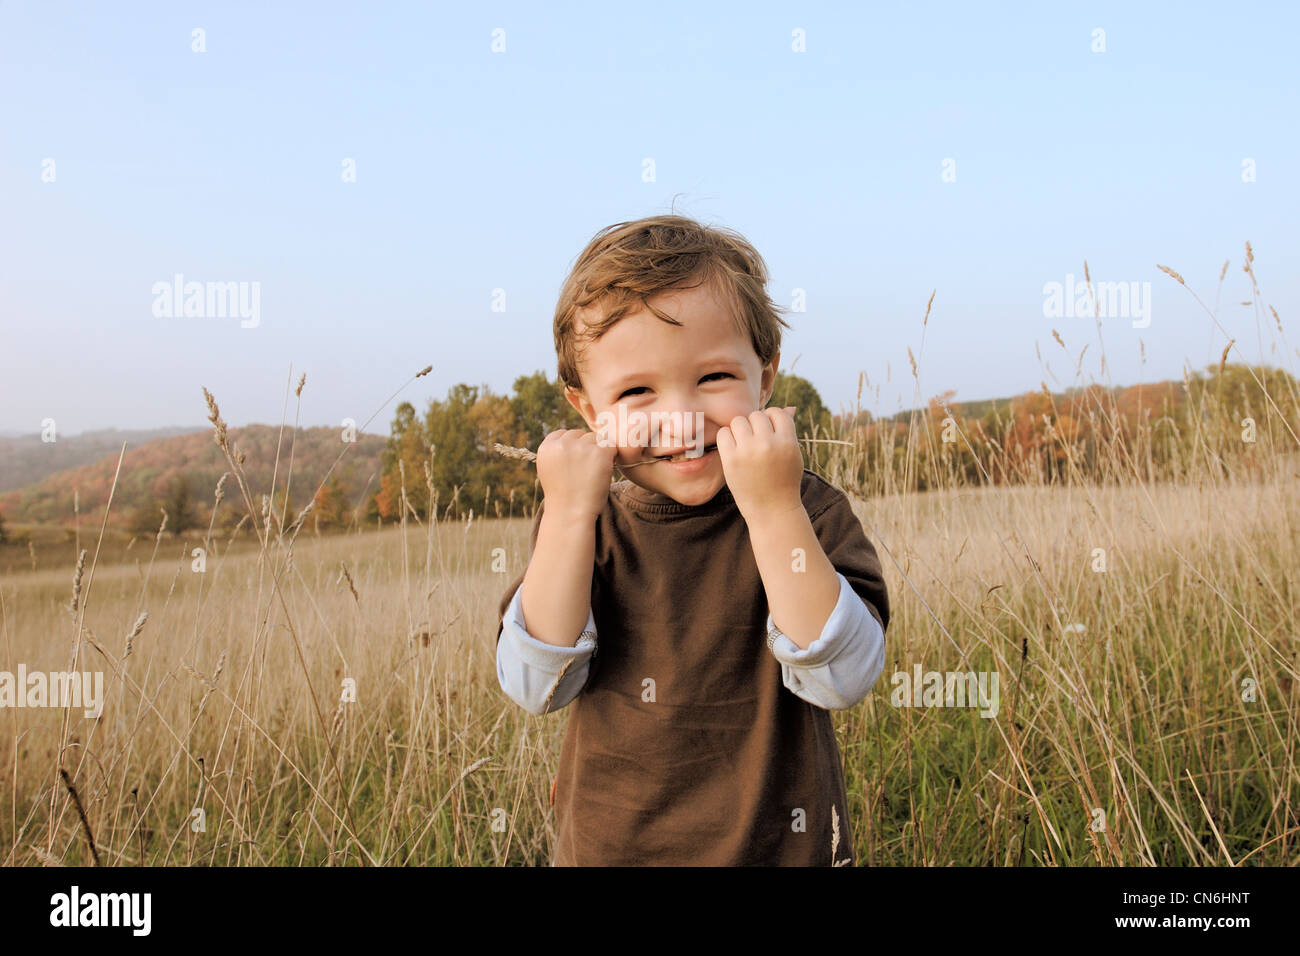 Junge im Feld hielt einen einzigen Weizen Stiel in Mund, Uxbridge, Ontario Stockfoto